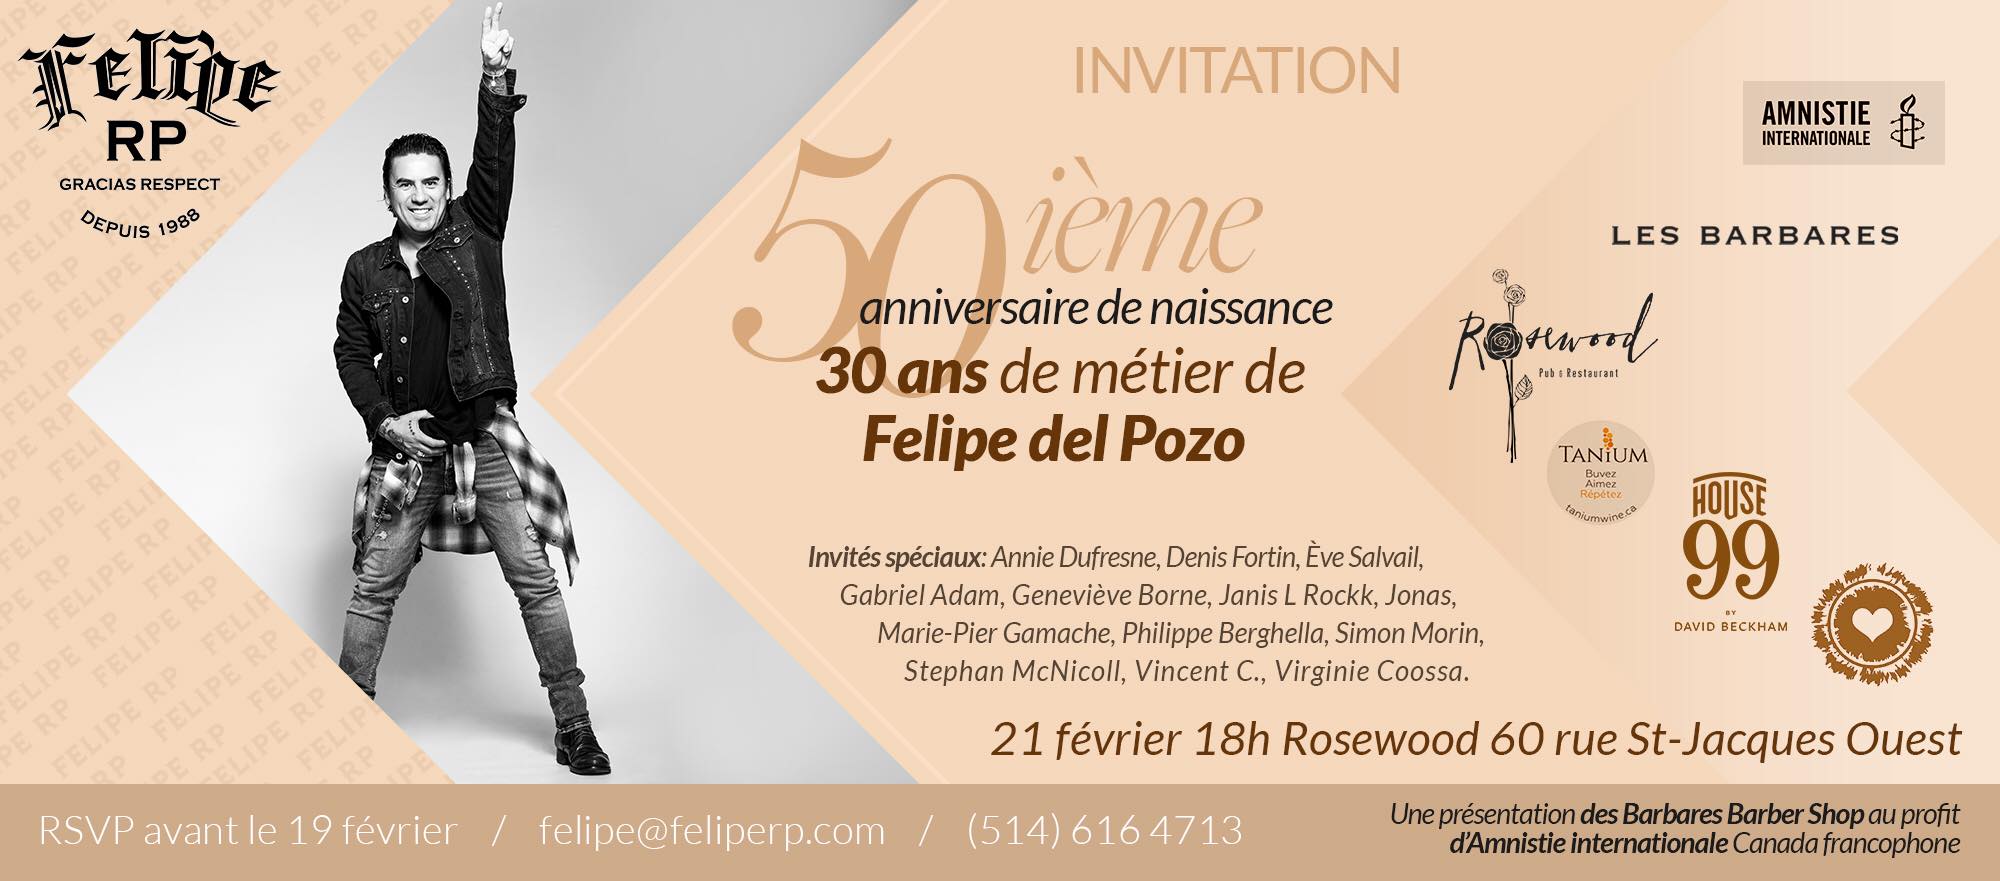 INVITATION 50E ET 30 ANS DE MÉTIER FELIPE DEL POZO